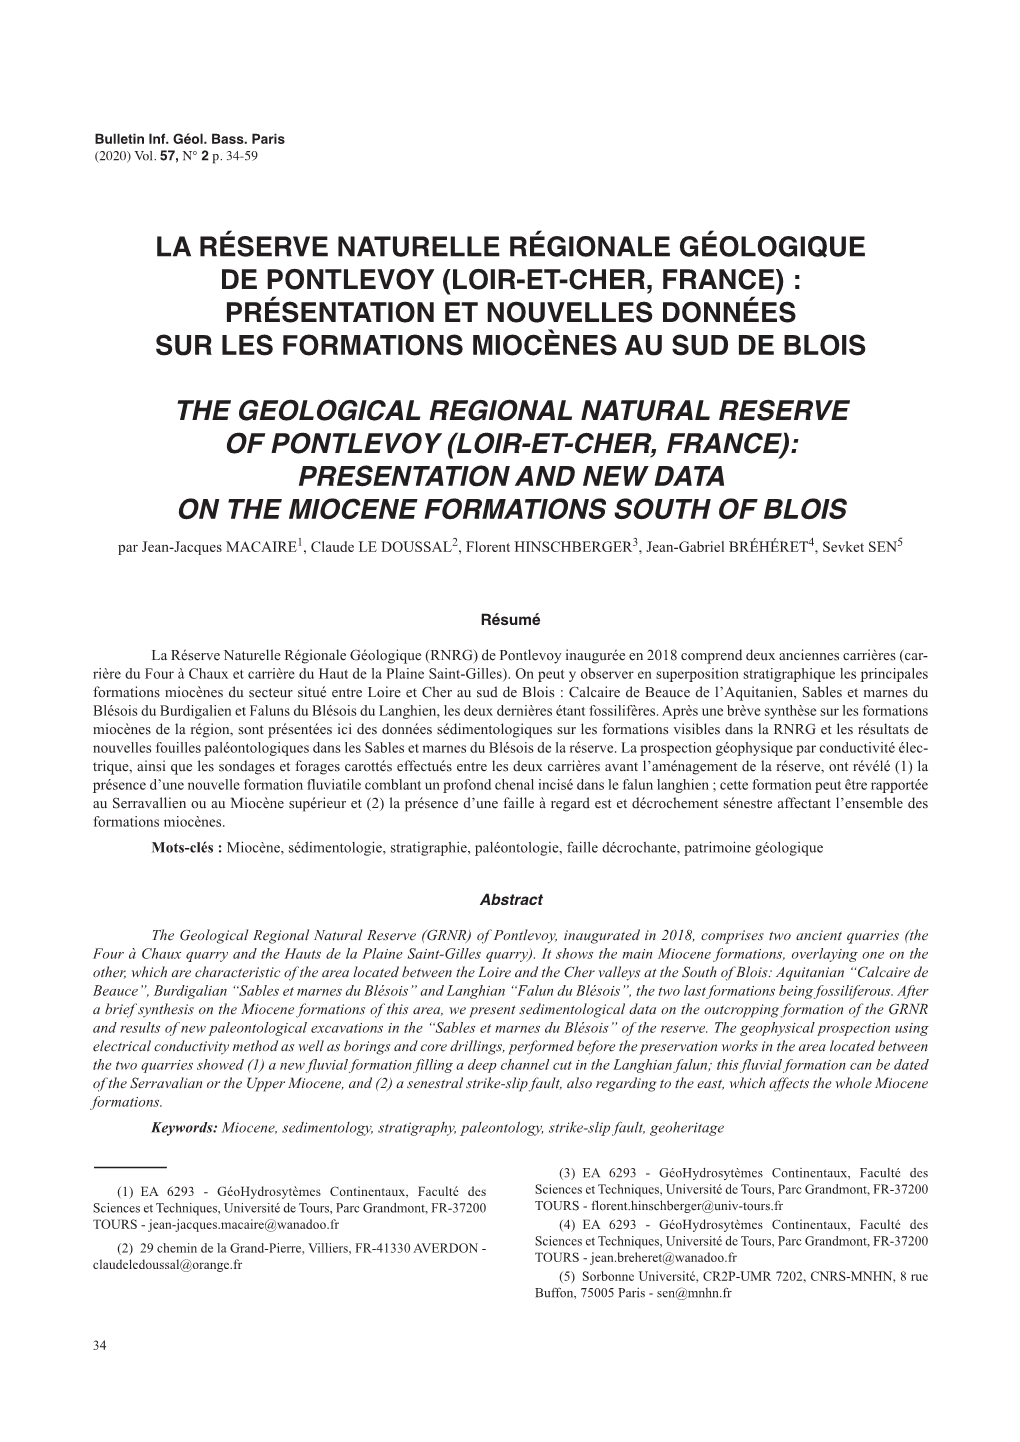 La Réserve Naturelle Régionale Géologique De Pontlevoy (Loir-Et-Cher, France) : Présentation Et Nouvelles Données Sur Les Formations Miocènes Au Sud De Blois